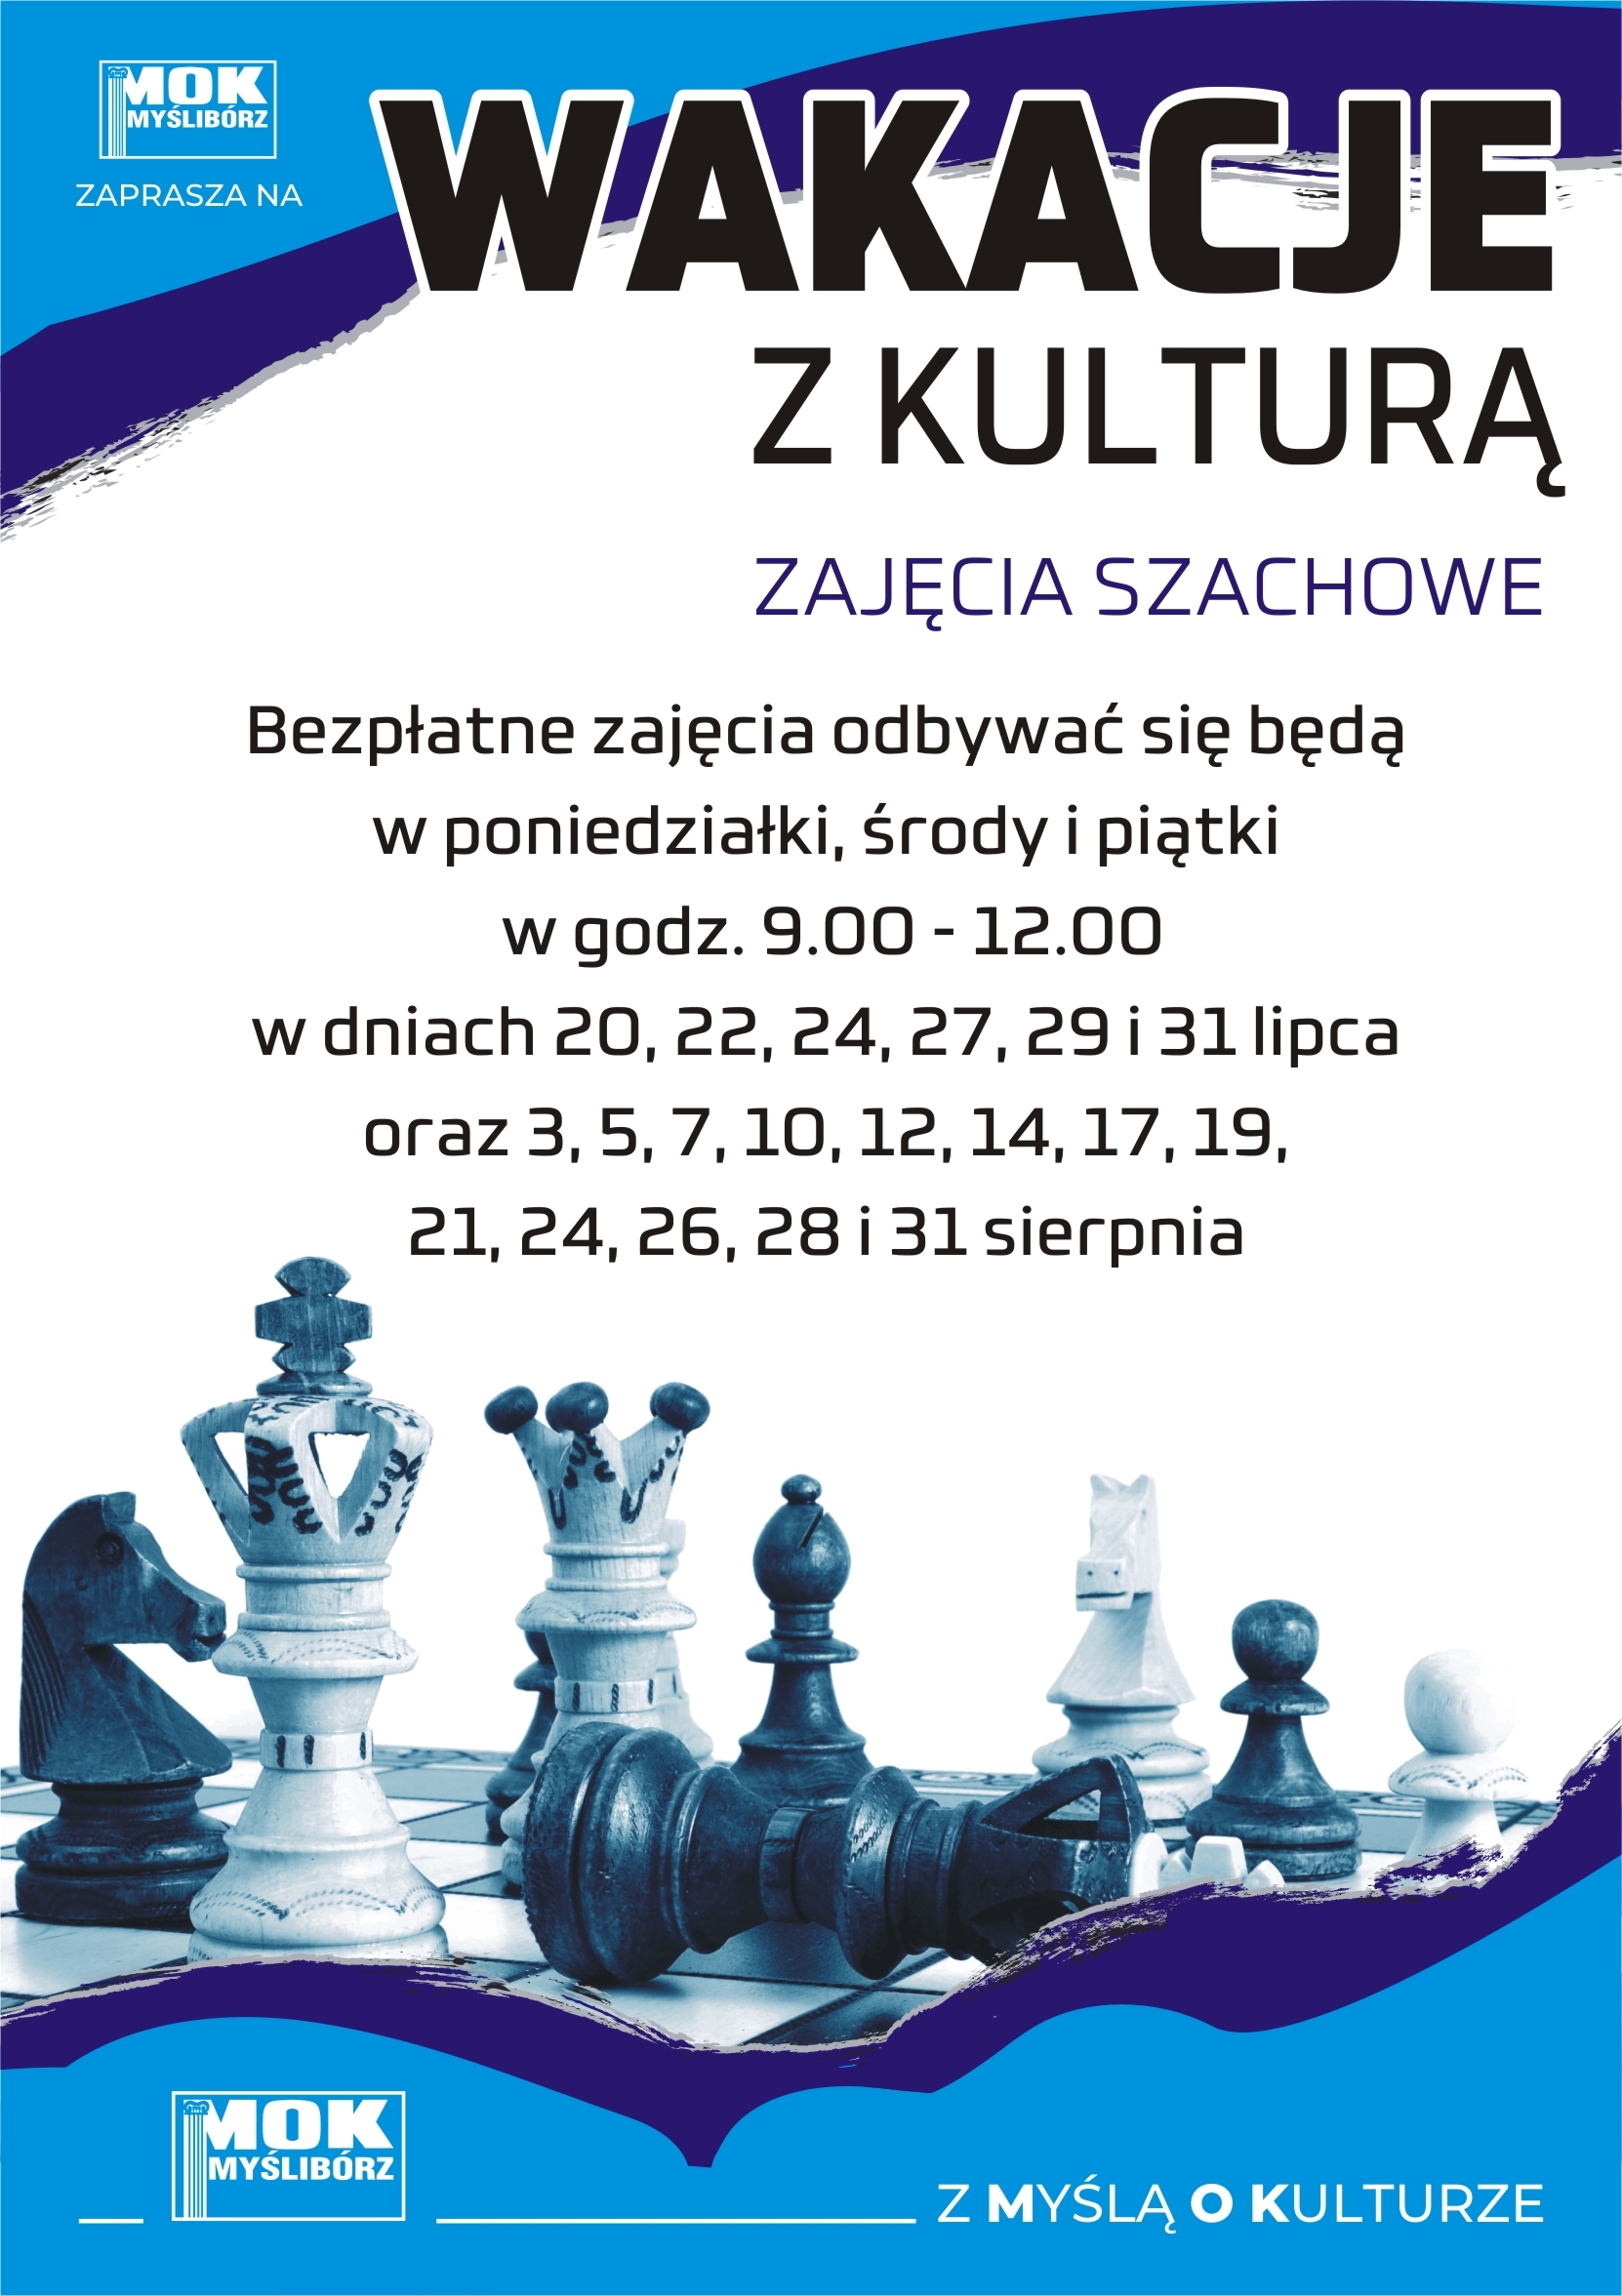 Wakacje z kulturą - zaproszenie na zajęcia szachowe